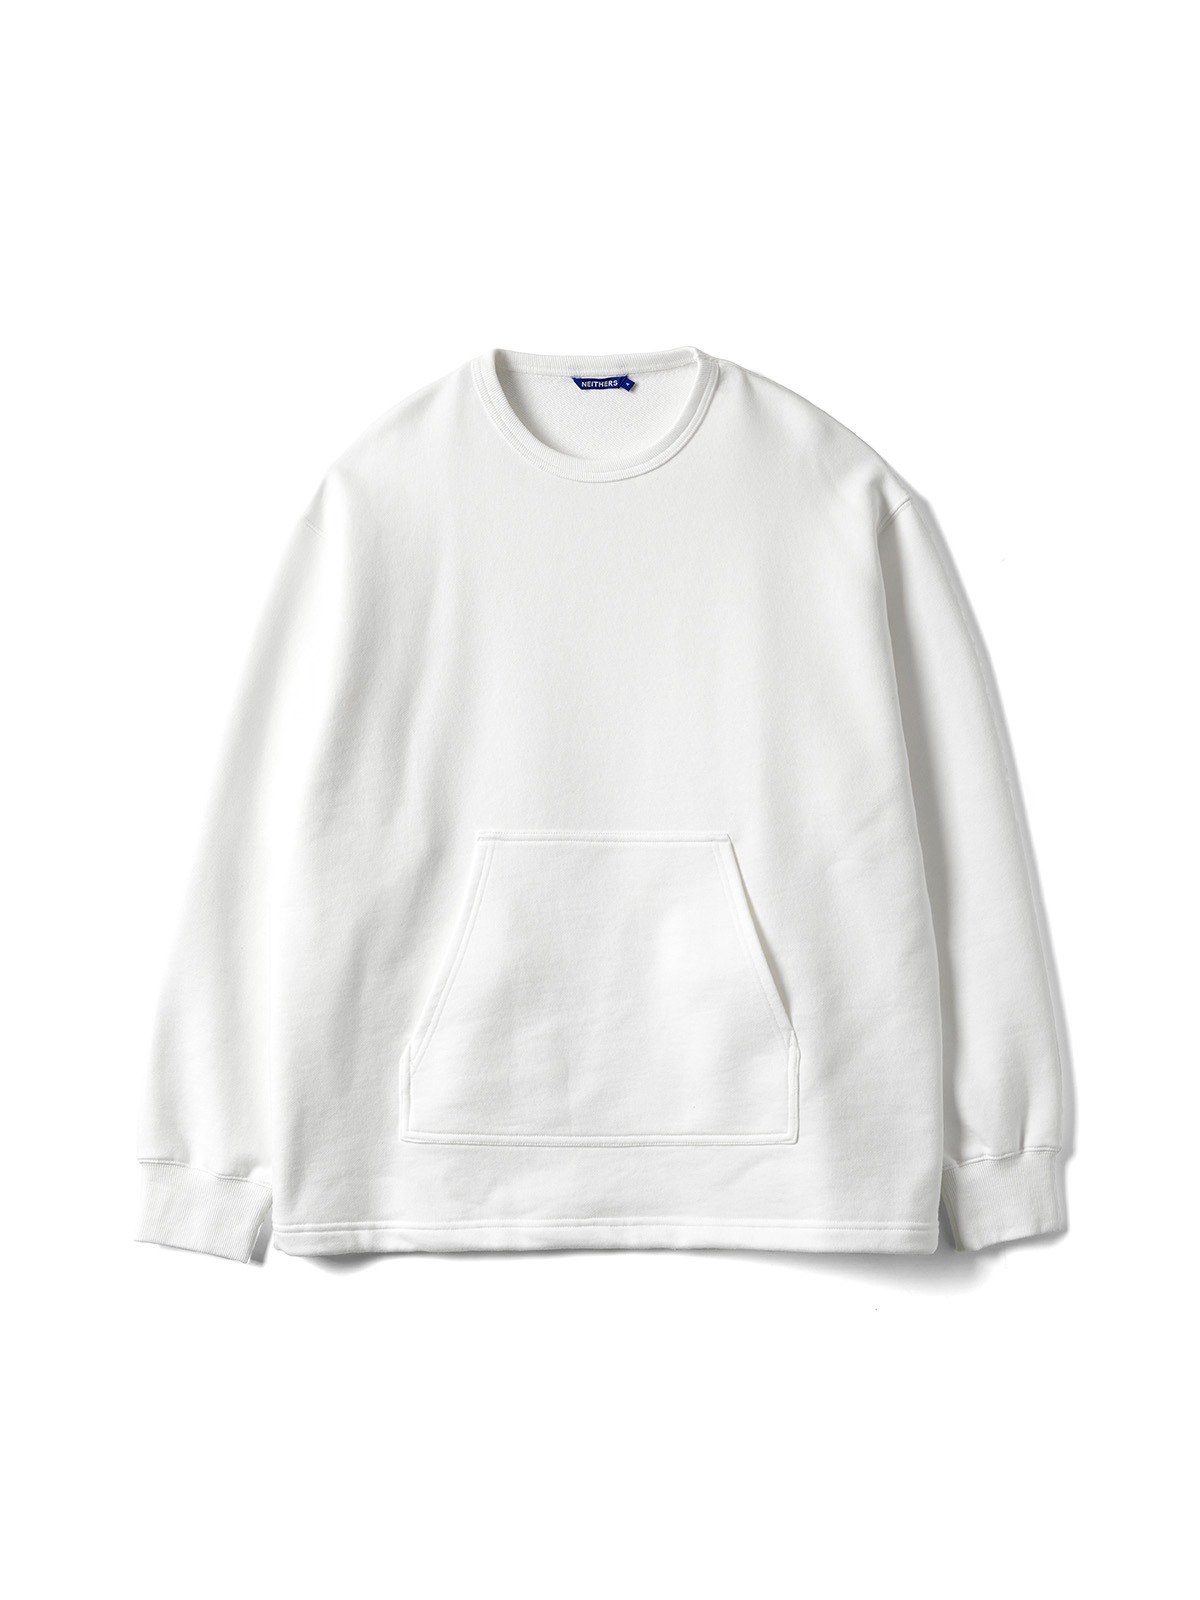 Newsboy L/S T-Shirt (Off White)